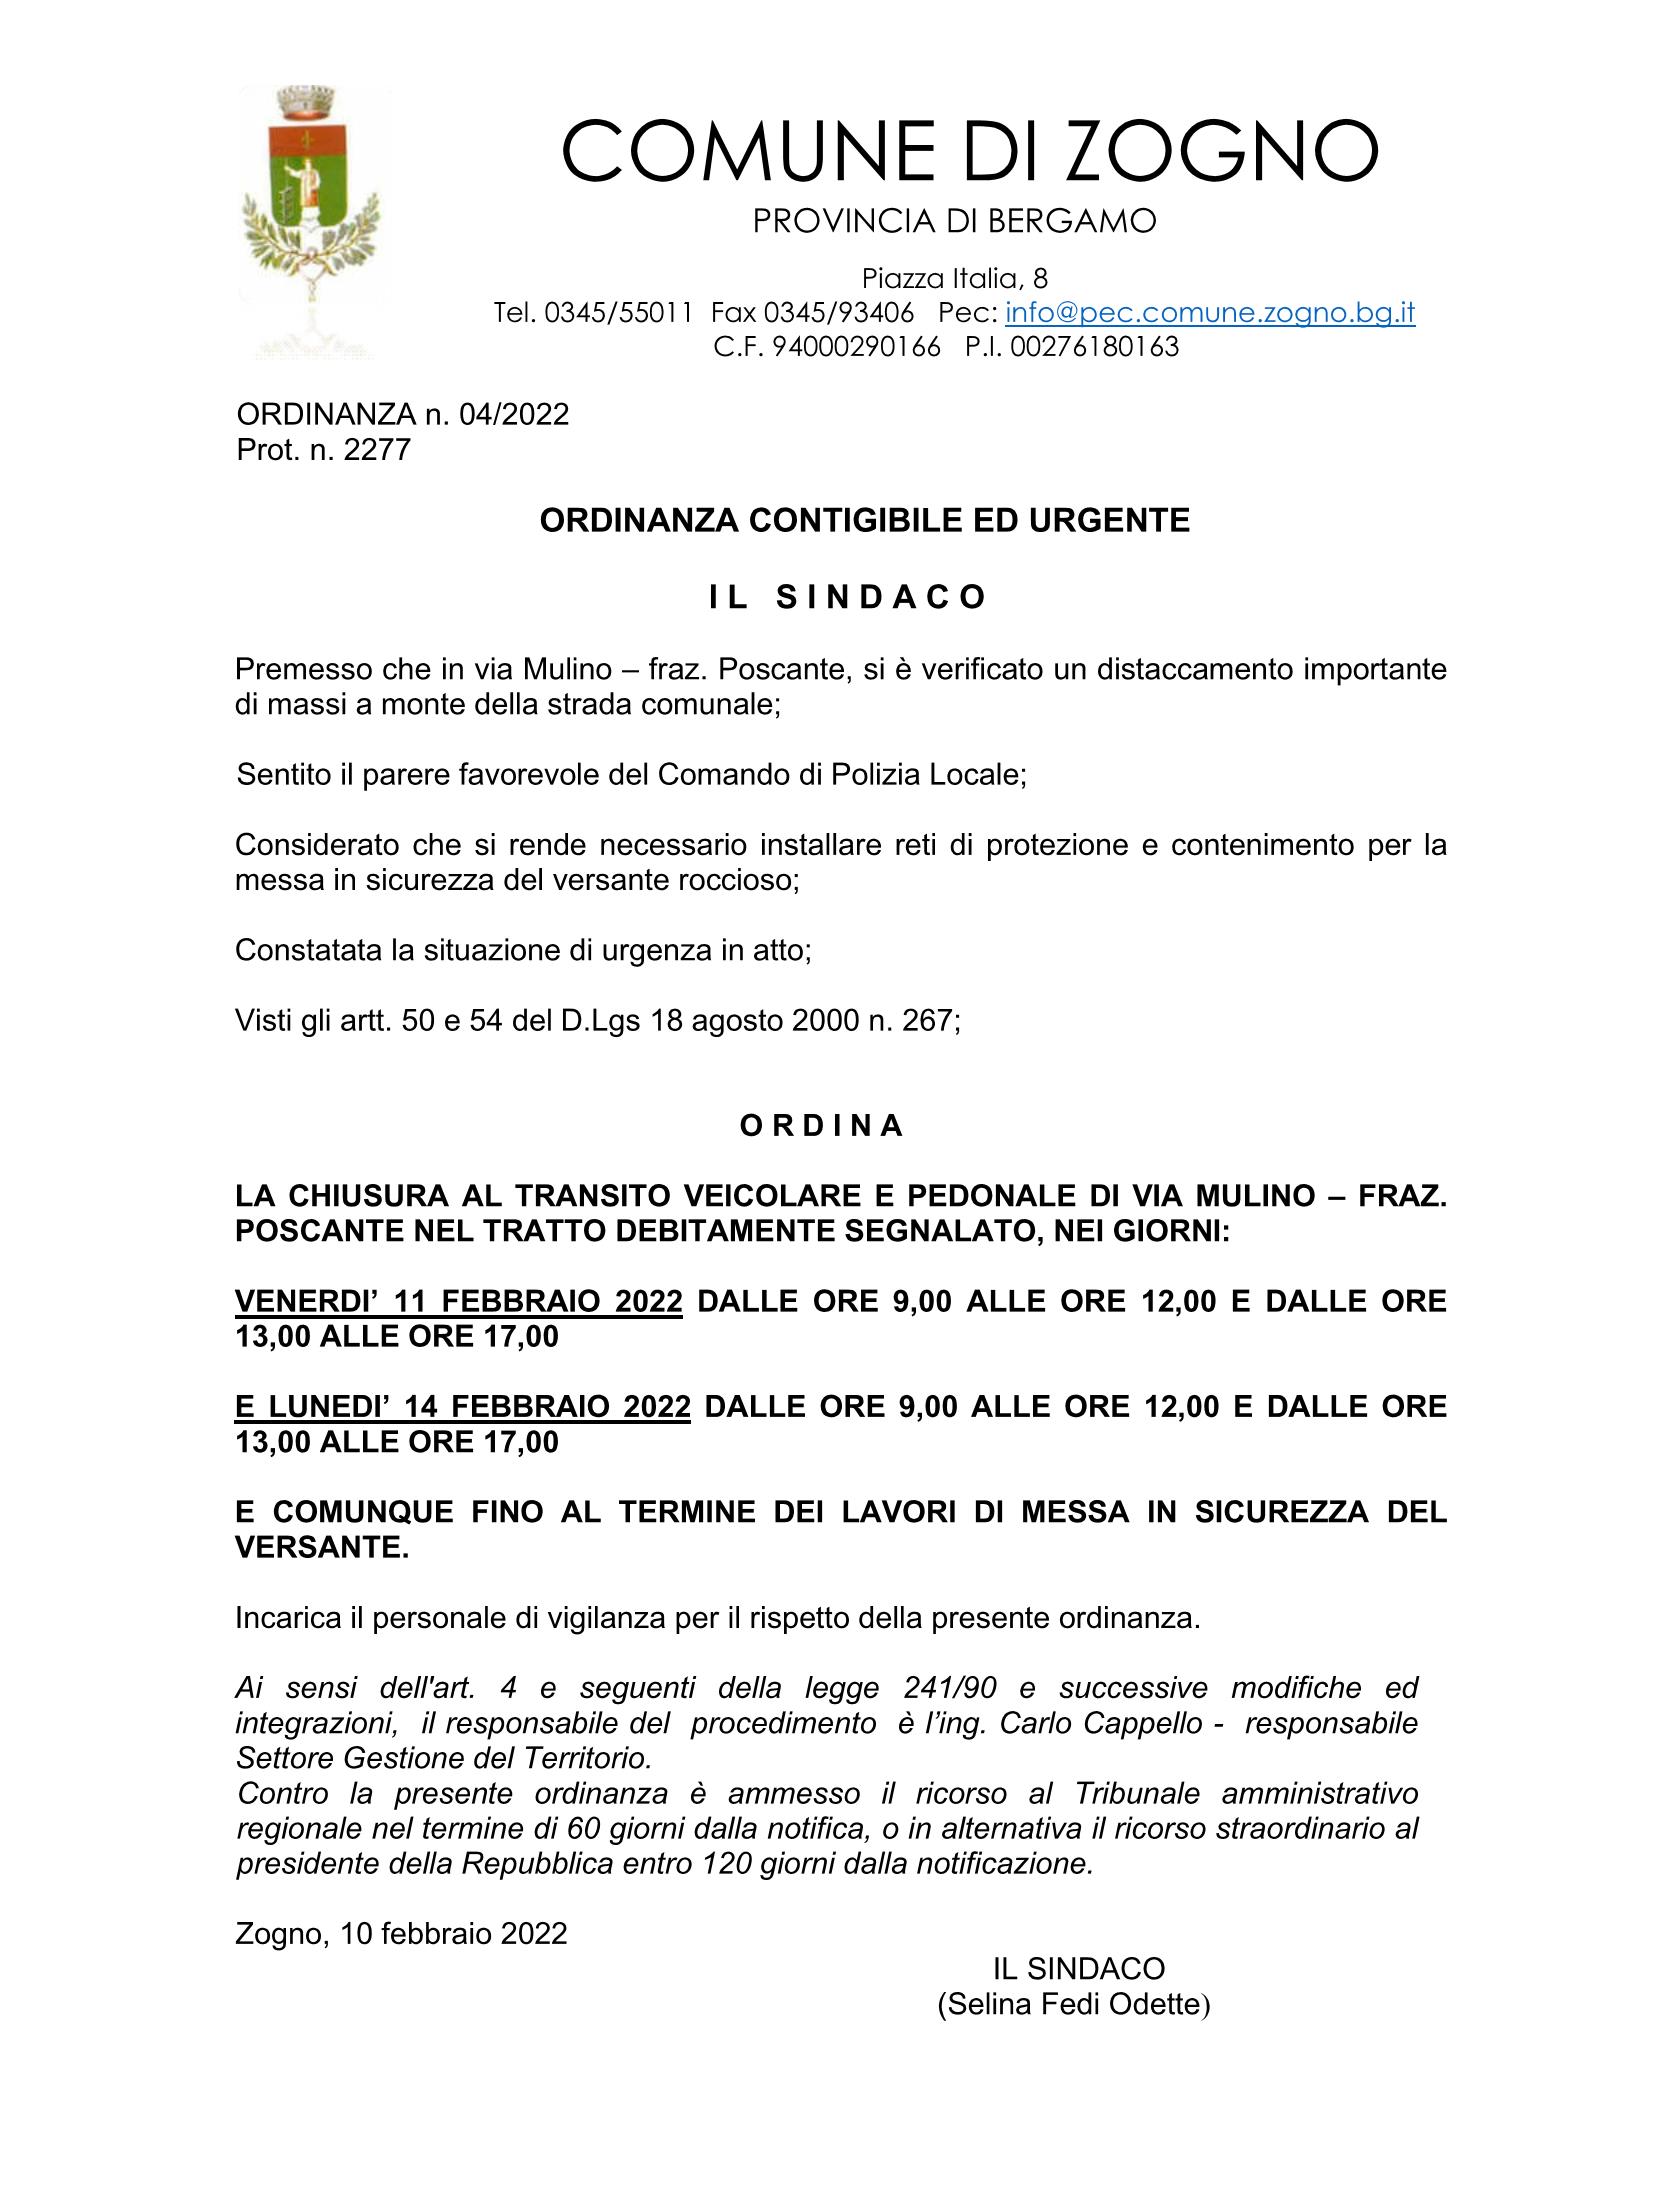 Ordinanza n  04 contingibile urgente caduta mssi via Mulino - Poscante_Page_1